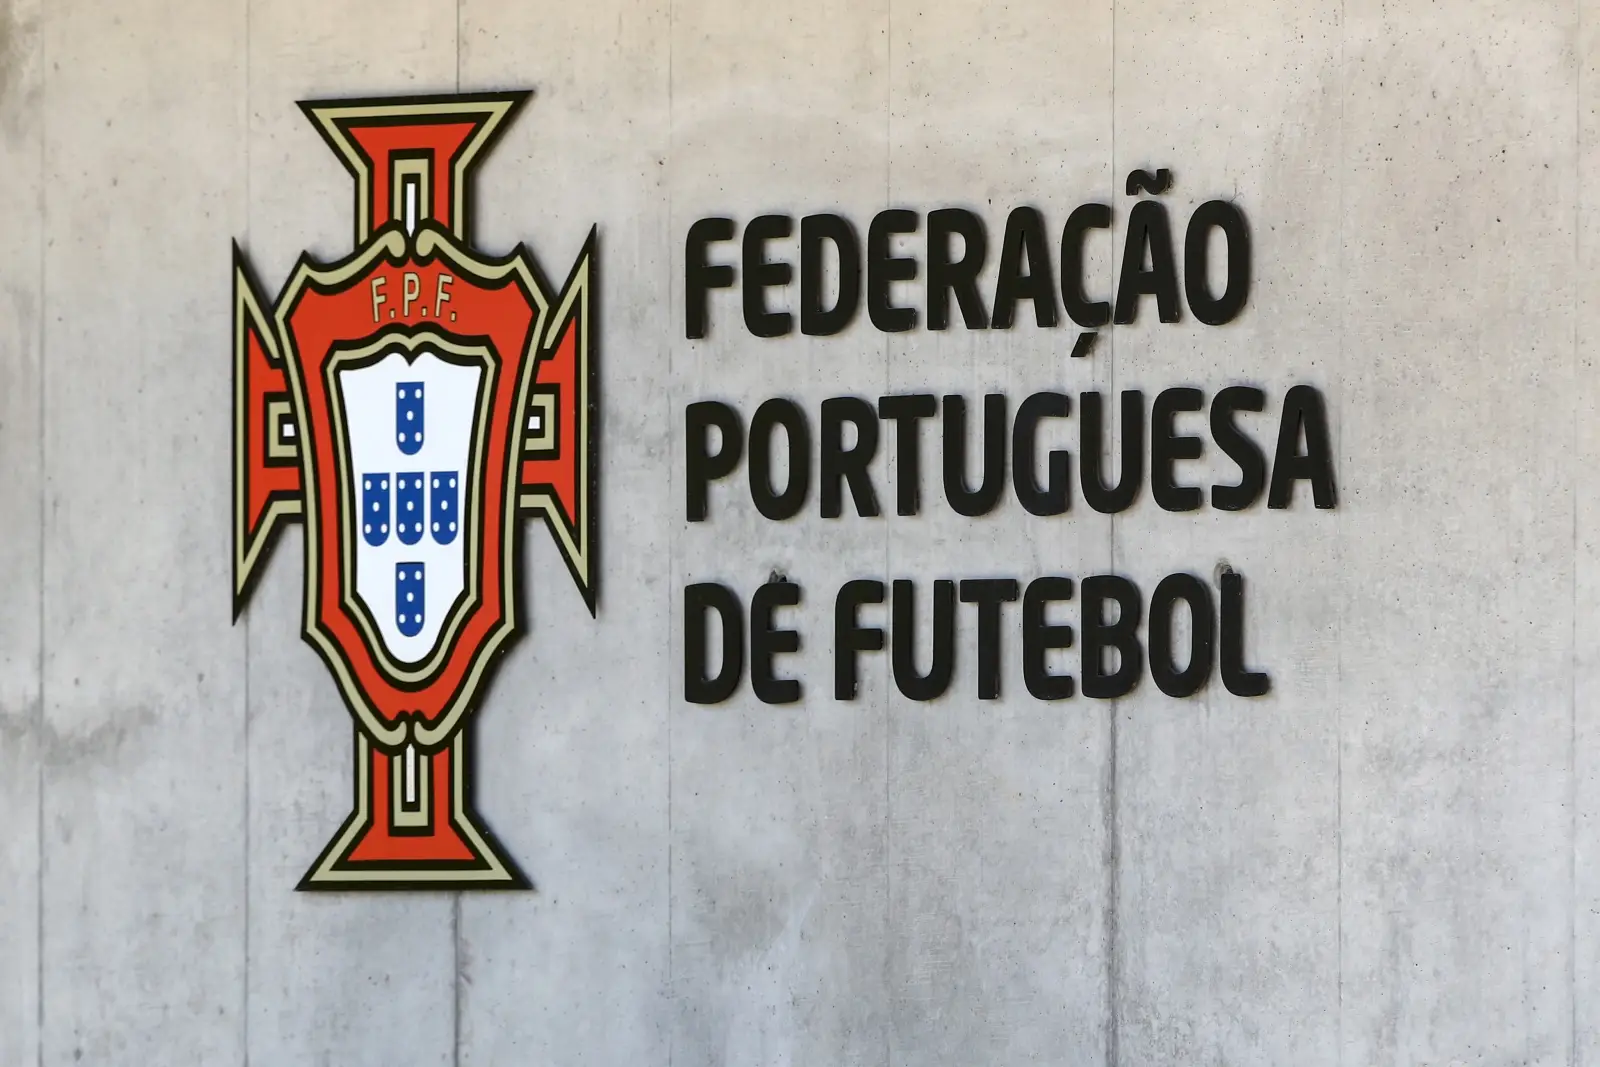 Federação Portuguesa de Futebol "veste a bandeira" pela defesa dos direitos humanos